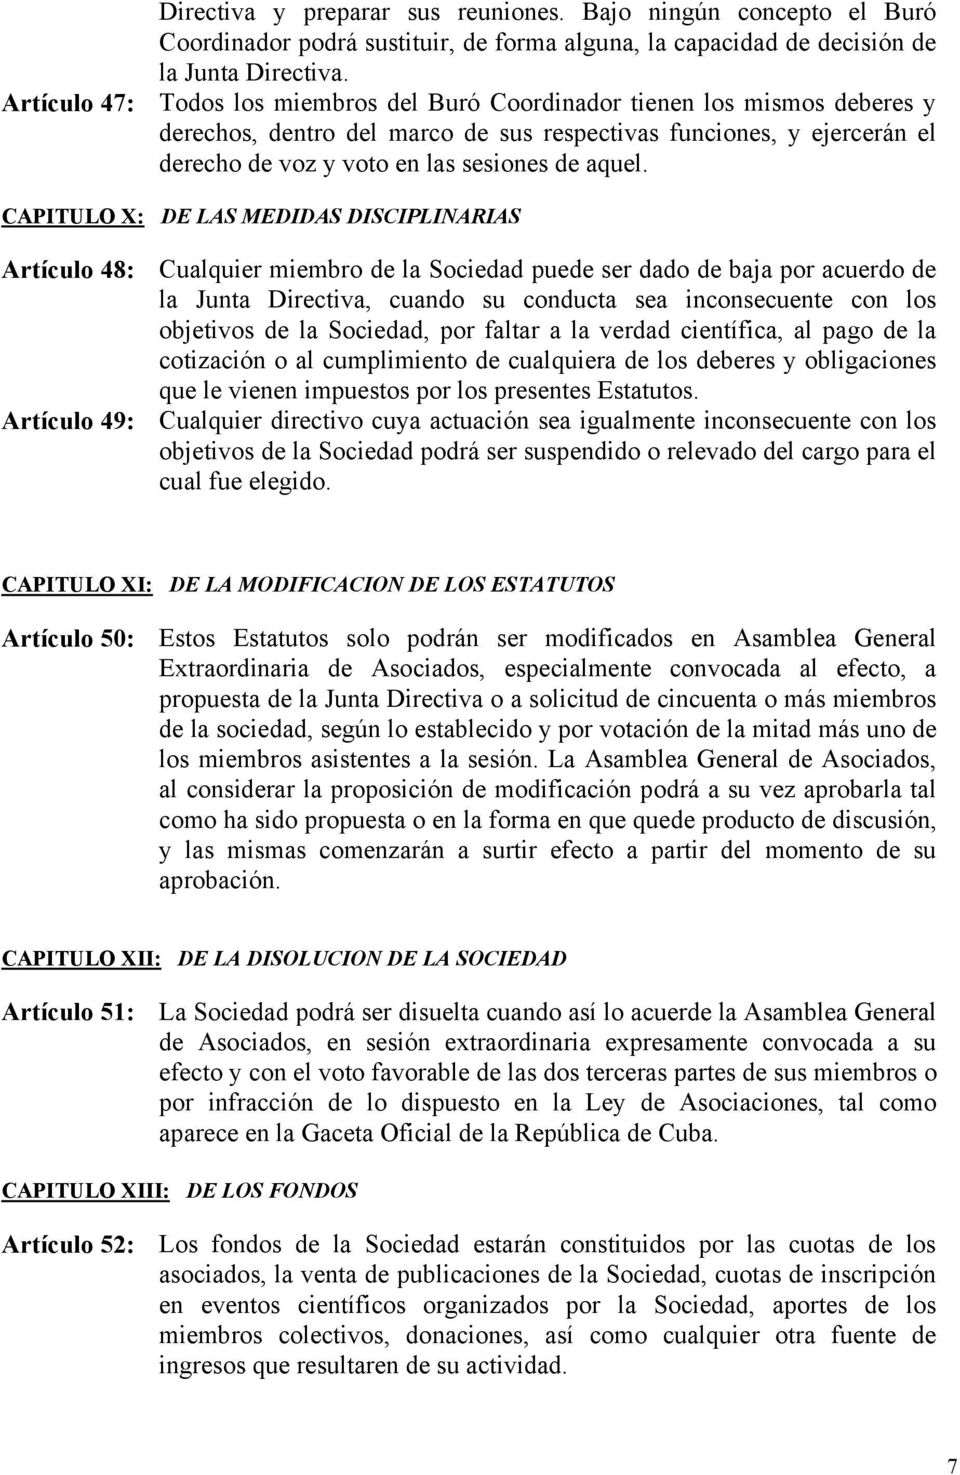 CAPITULO X: DE LAS MEDIDAS DISCIPLINARIAS Artículo 48: Cualquier miembro de la Sociedad puede ser dado de baja por acuerdo de la Junta Directiva, cuando su conducta sea inconsecuente con los